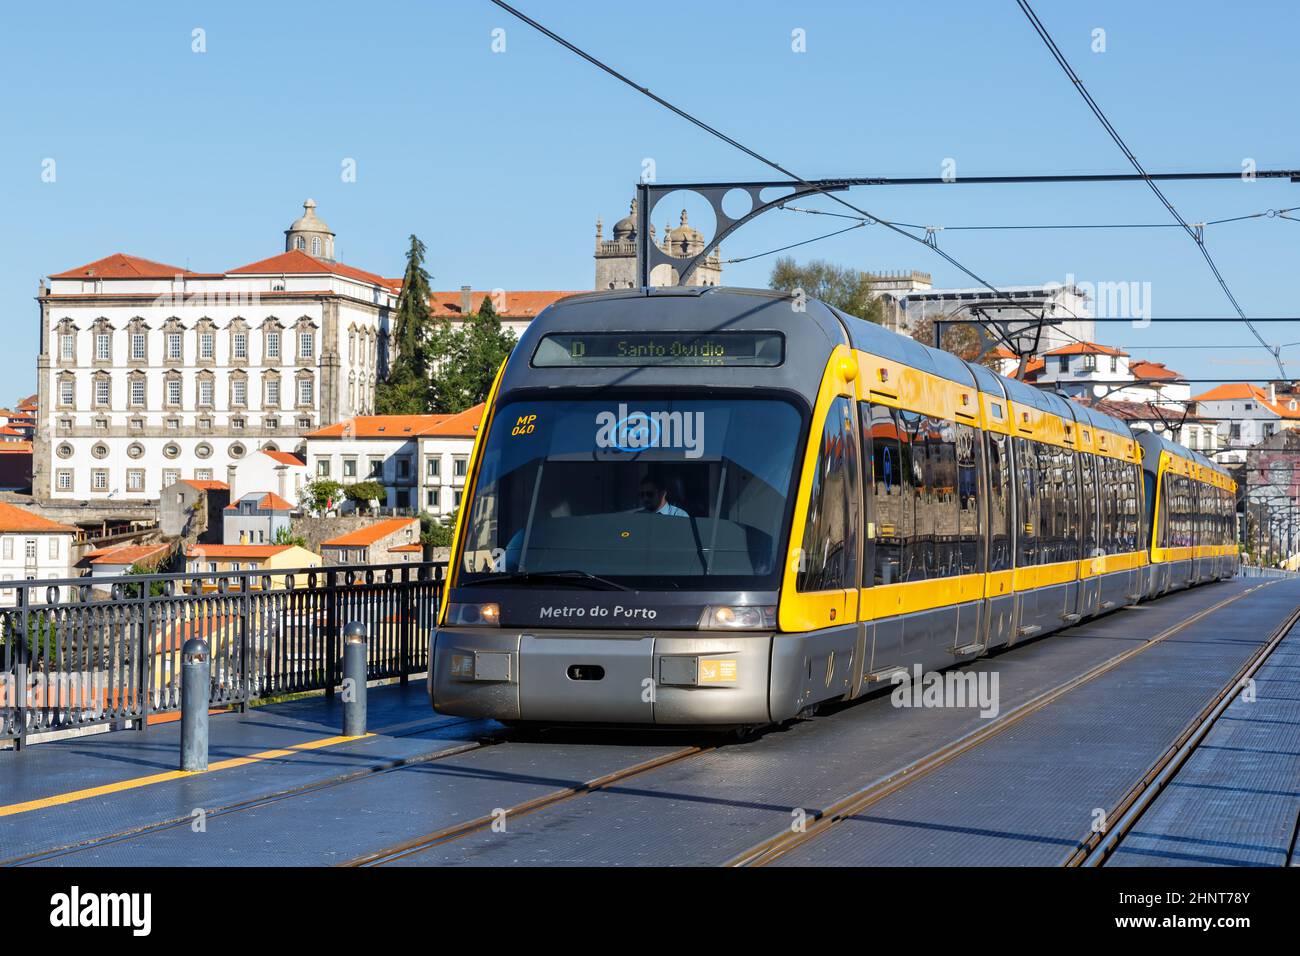 Moderno tren ligero Metro do Porto tranvía transporte público tráfico de transporte en el puente Ponte Dom Luis I en Portugal Foto de stock